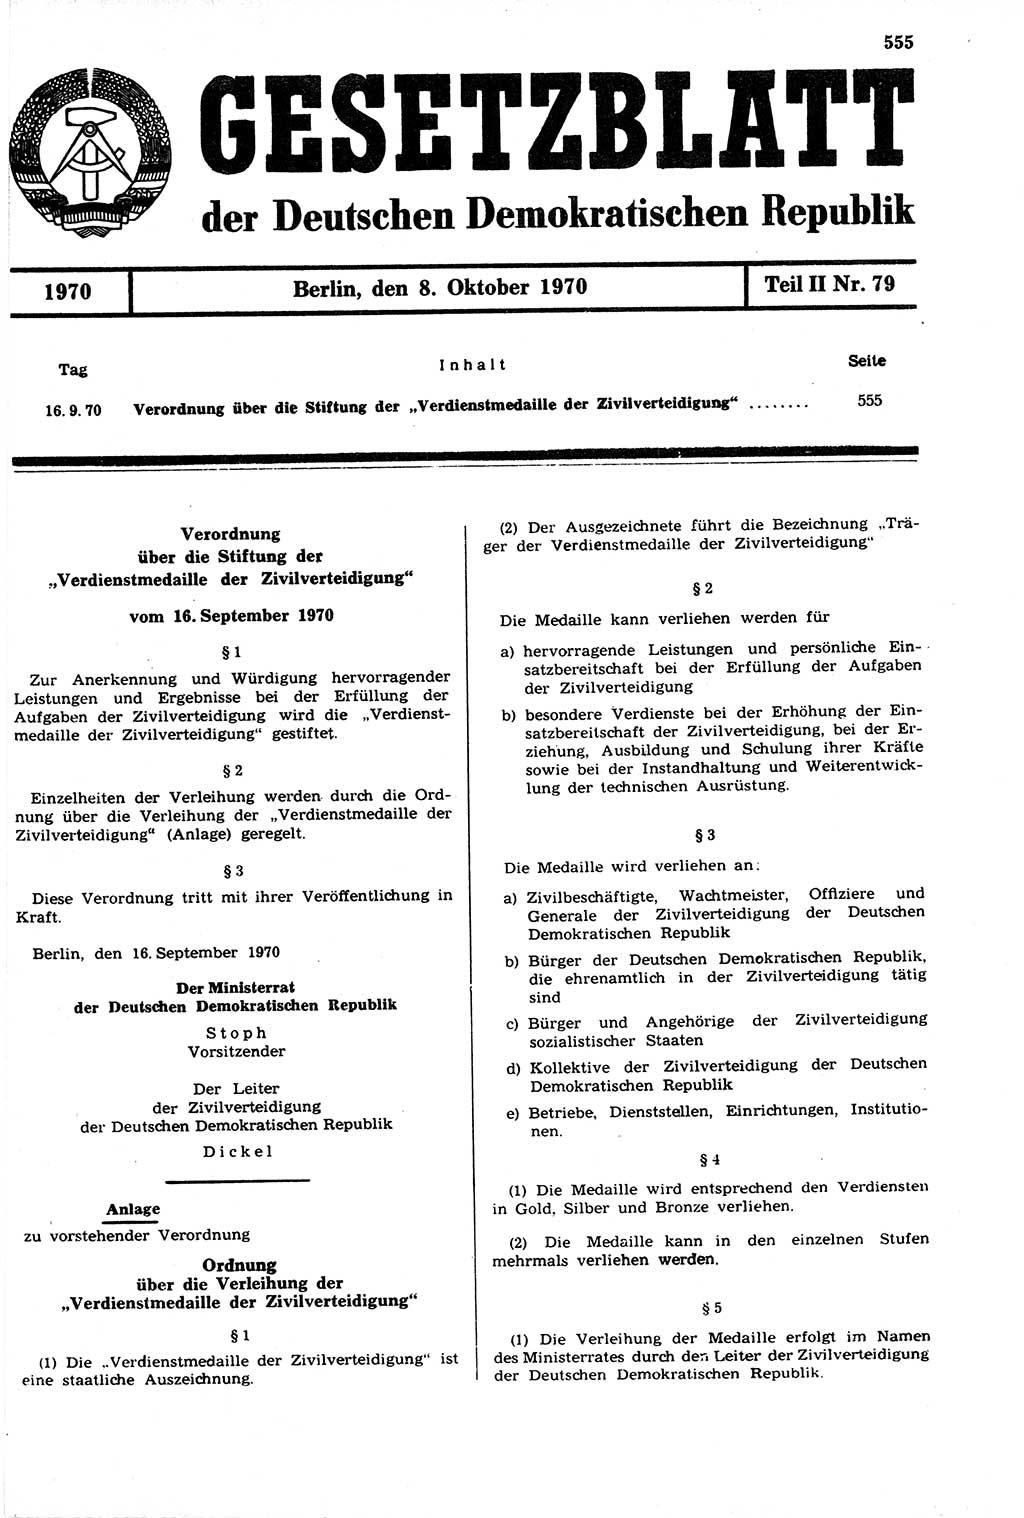 Gesetzblatt (GBl.) der Deutschen Demokratischen Republik (DDR) Teil ⅠⅠ 1970, Seite 555 (GBl. DDR ⅠⅠ 1970, S. 555)